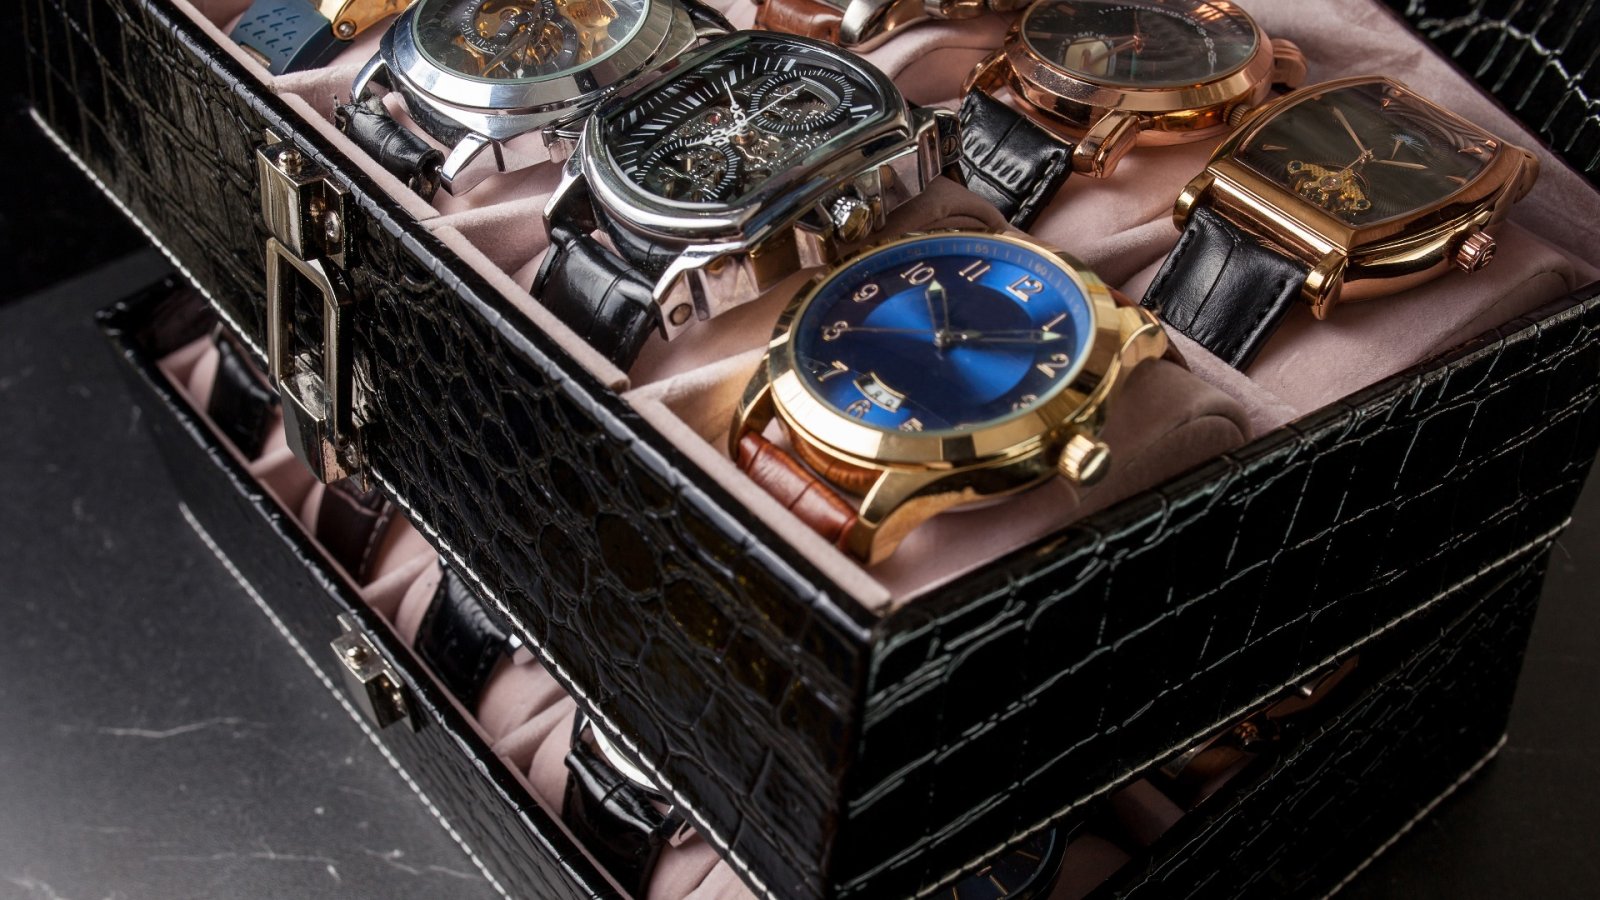 4가지 머스트 해브 럭셔리 제품으로 나만의 멋진 시계 컬렉션을 만드는 방법